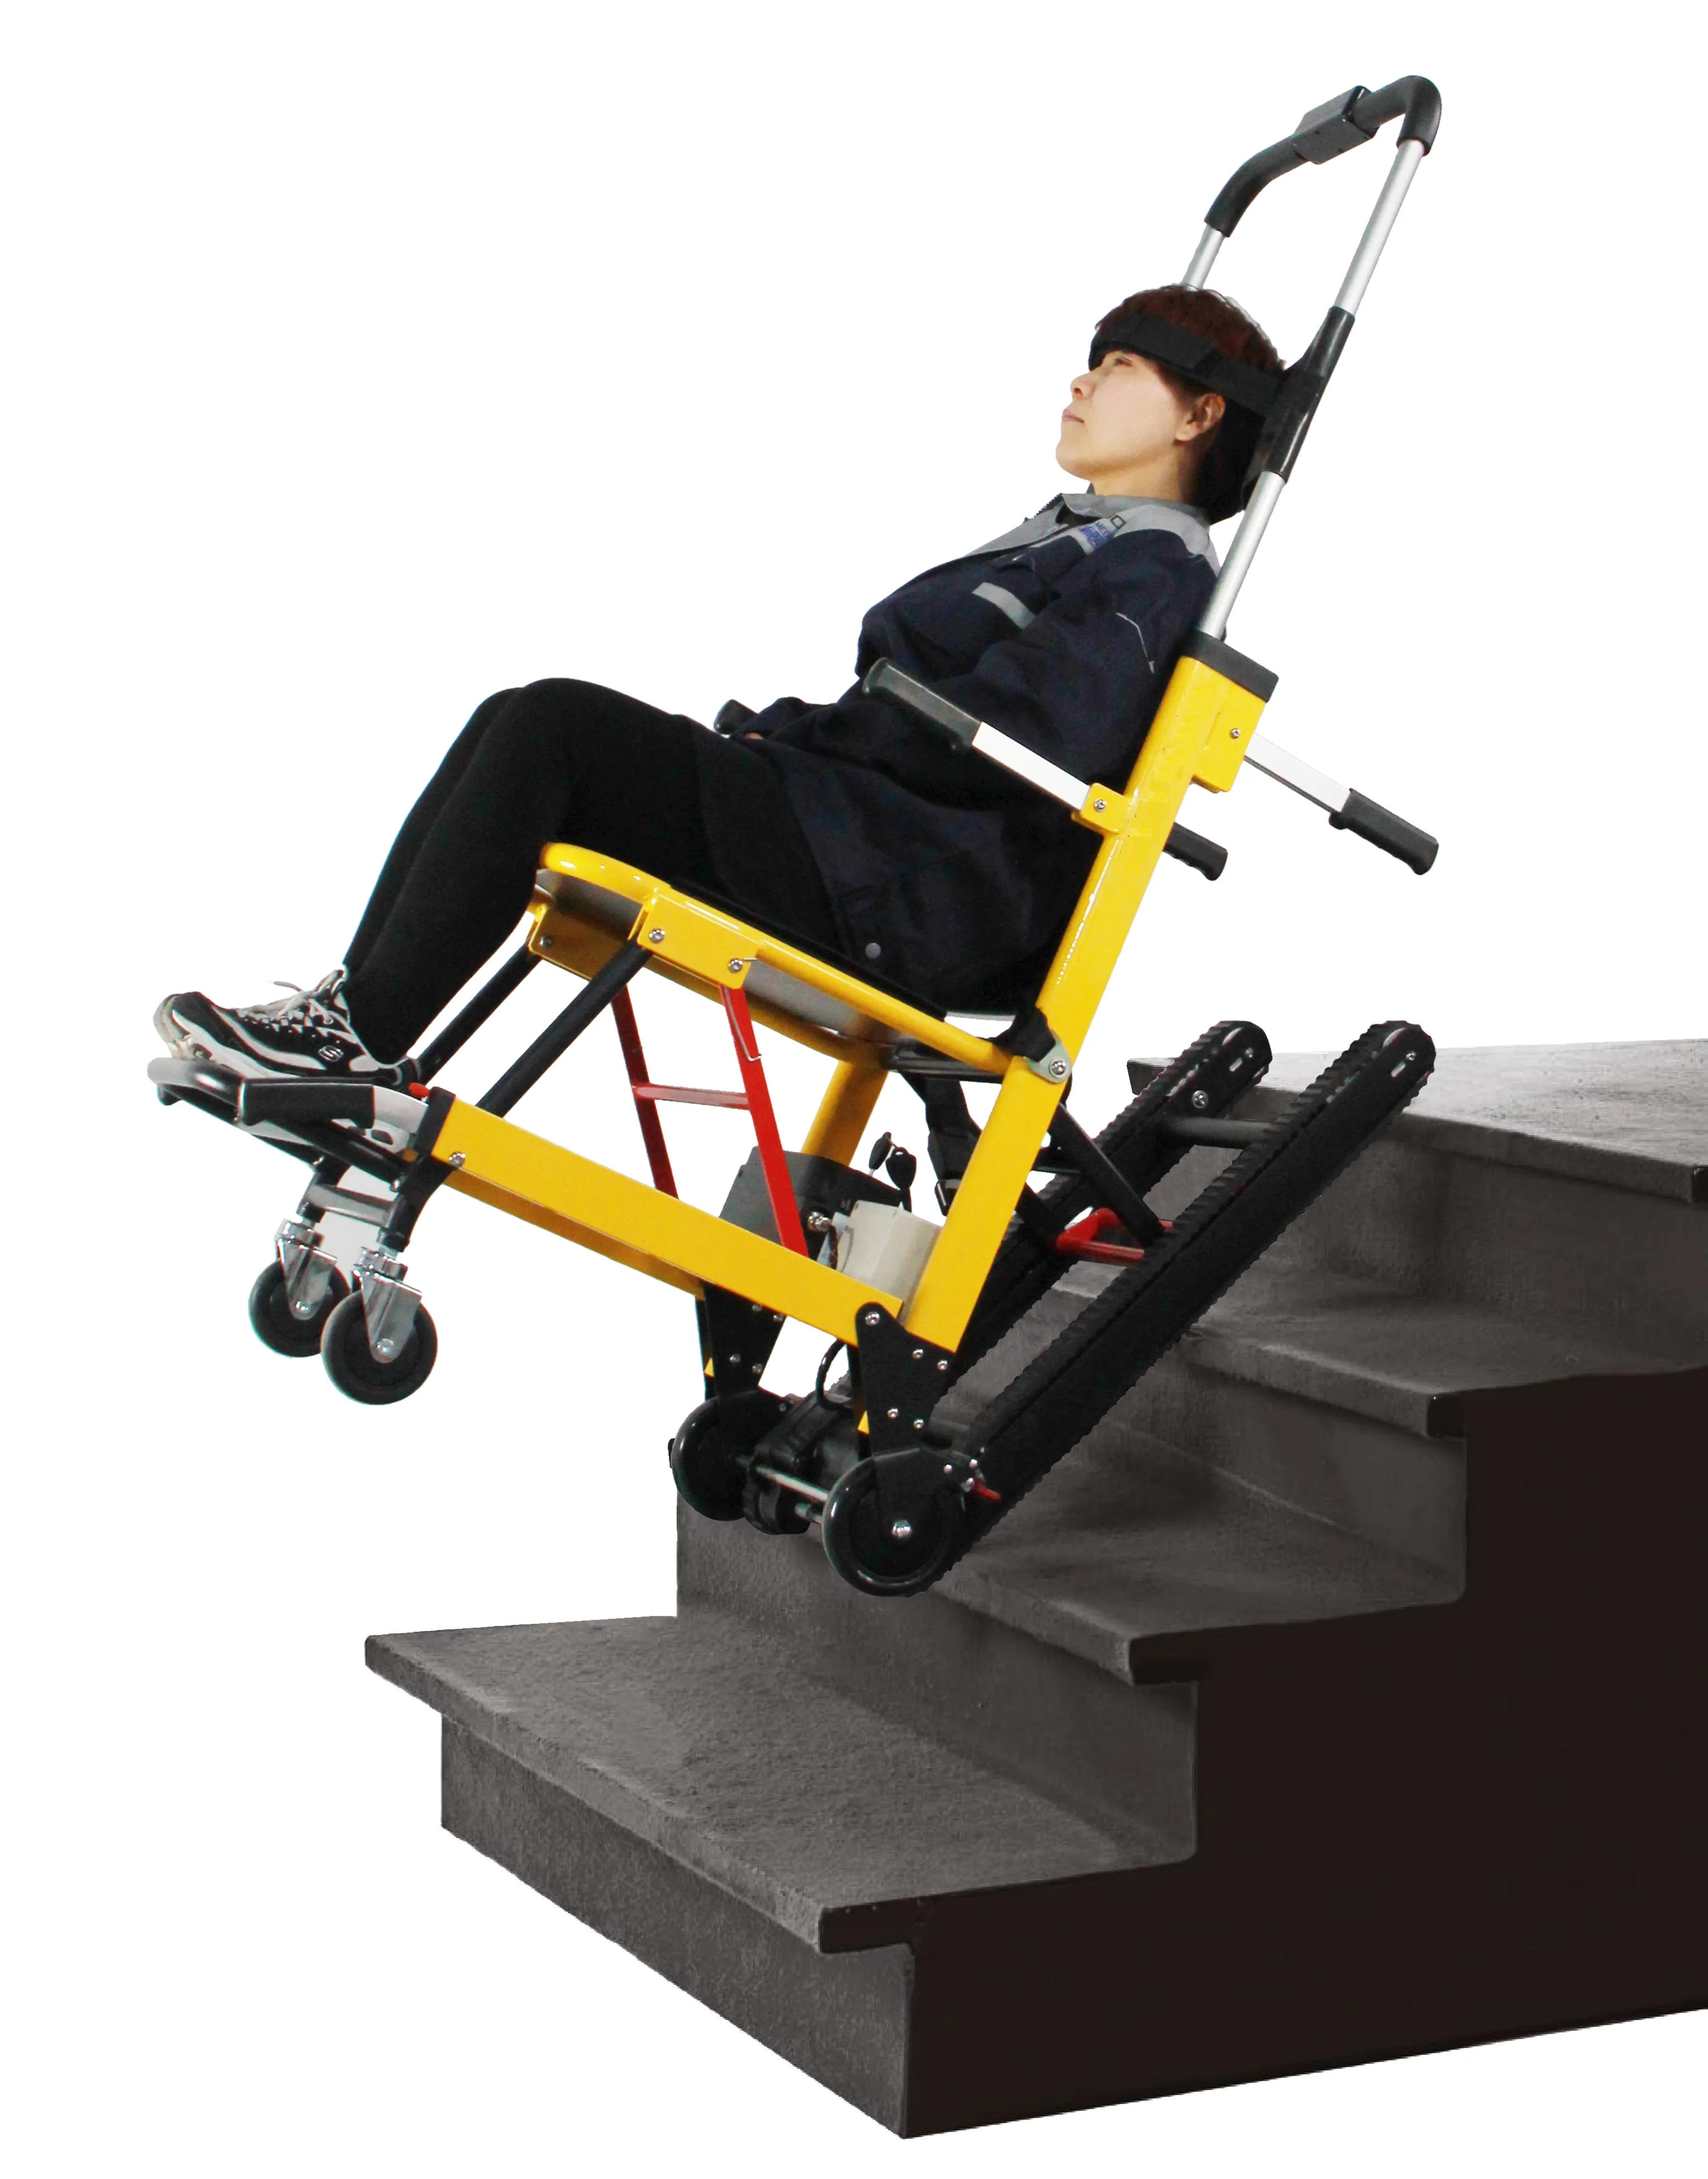 Шагающее кресло. Инвалидов подъёмник DW-st003a. Ступенькоход инвалидная коляска электрическая. Лестничный подъемник BK c100. Коляска инвалидная для подъема подъема по лестнице.